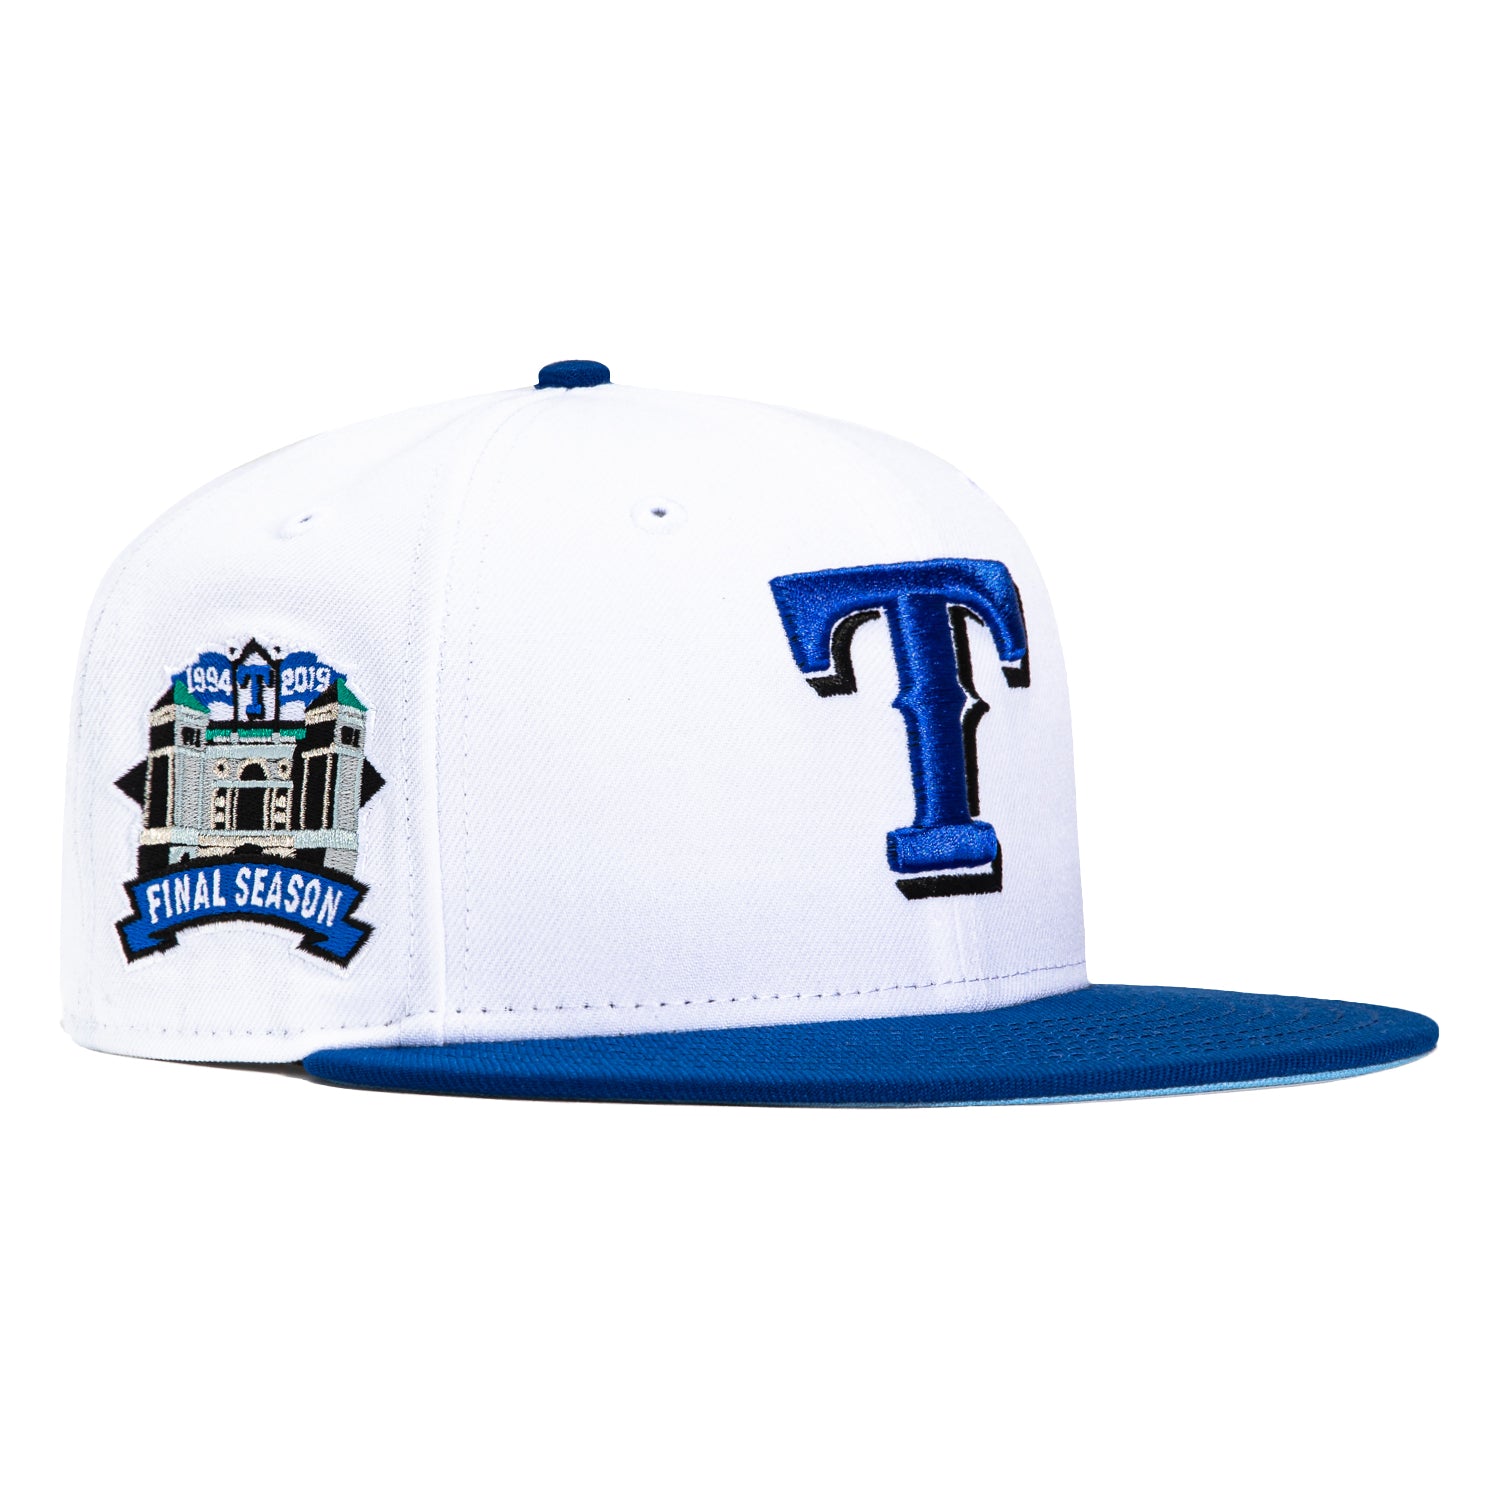 New Era 59Fifty Texas Rangers Final Season Patch Hat - White, Royal – Hat  Club